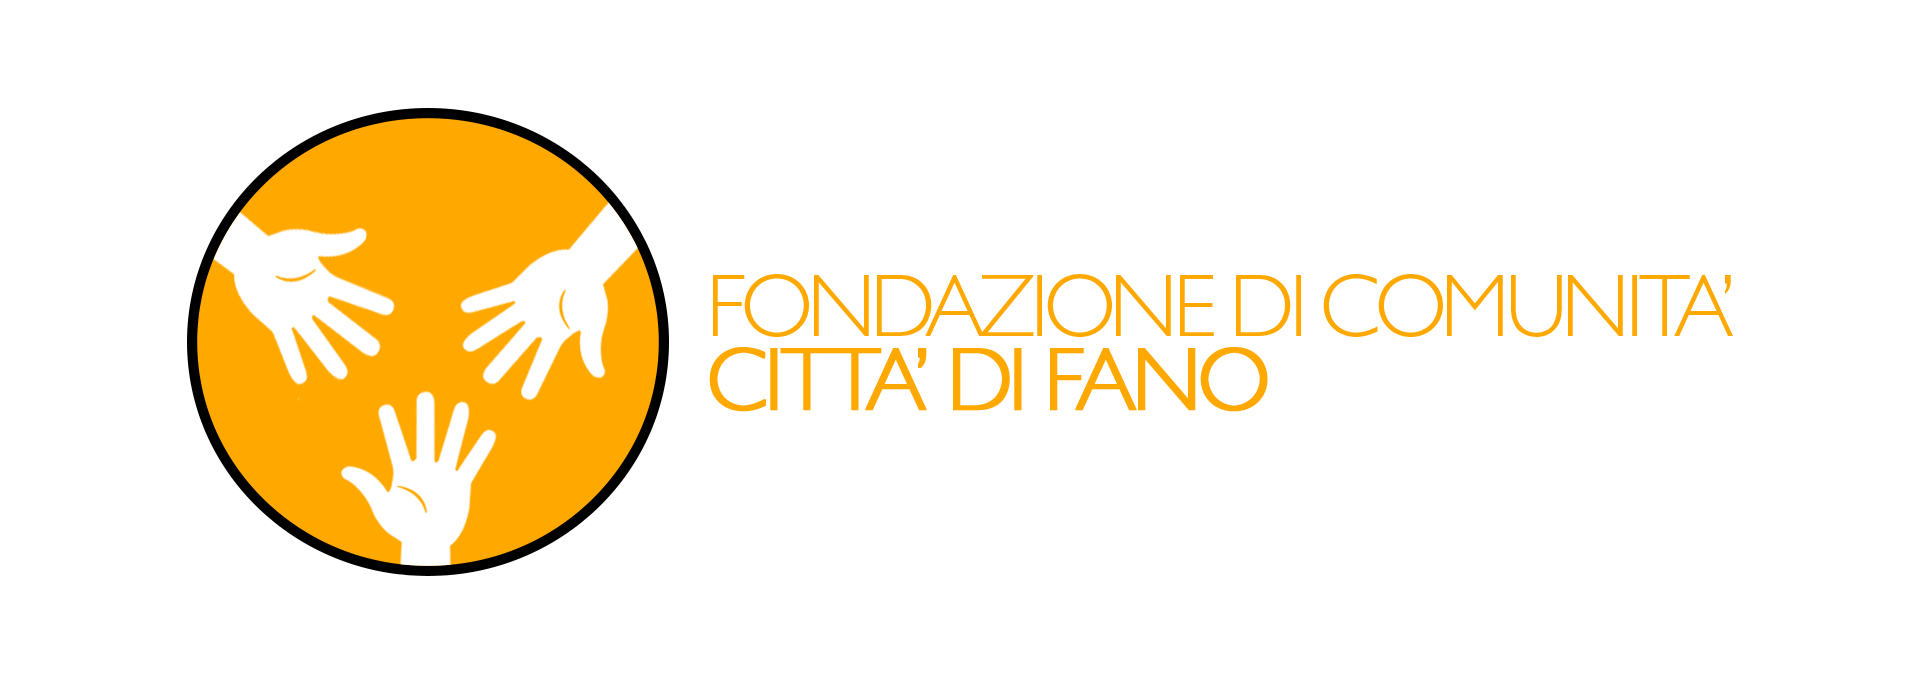 https://www.economiaprimaedopo.it/wp-content/uploads/2020/10/Fondazione-Comunita.png